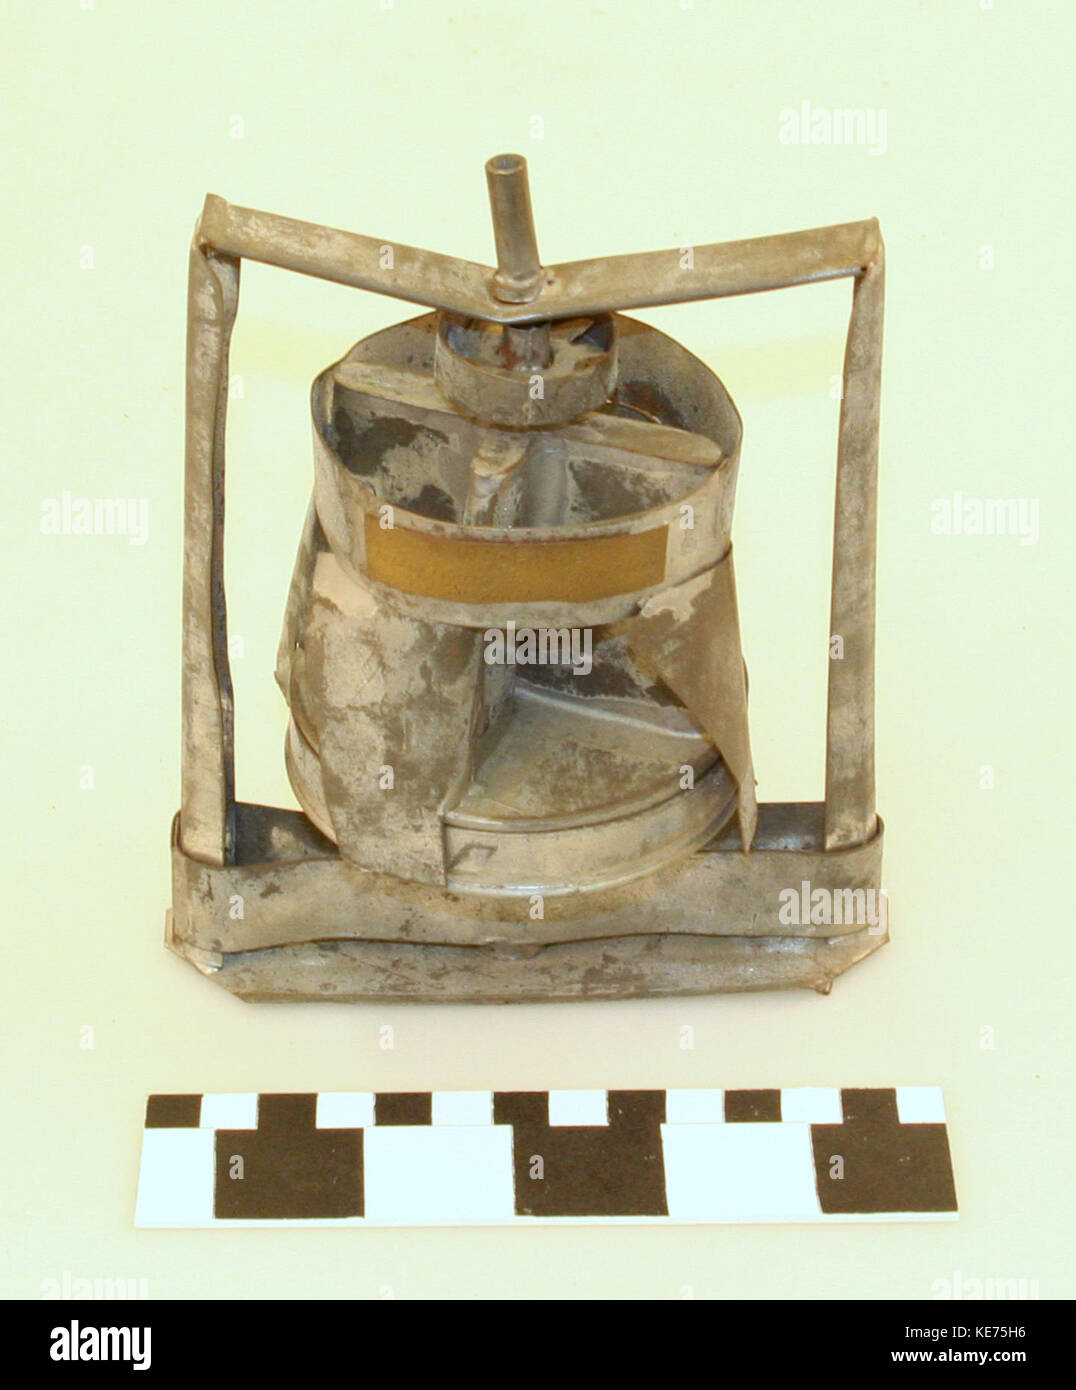 Vapore e gas brevetto condensatore modello con brevetto originale tag da Alonzo W. Cram di San Luigi Foto Stock